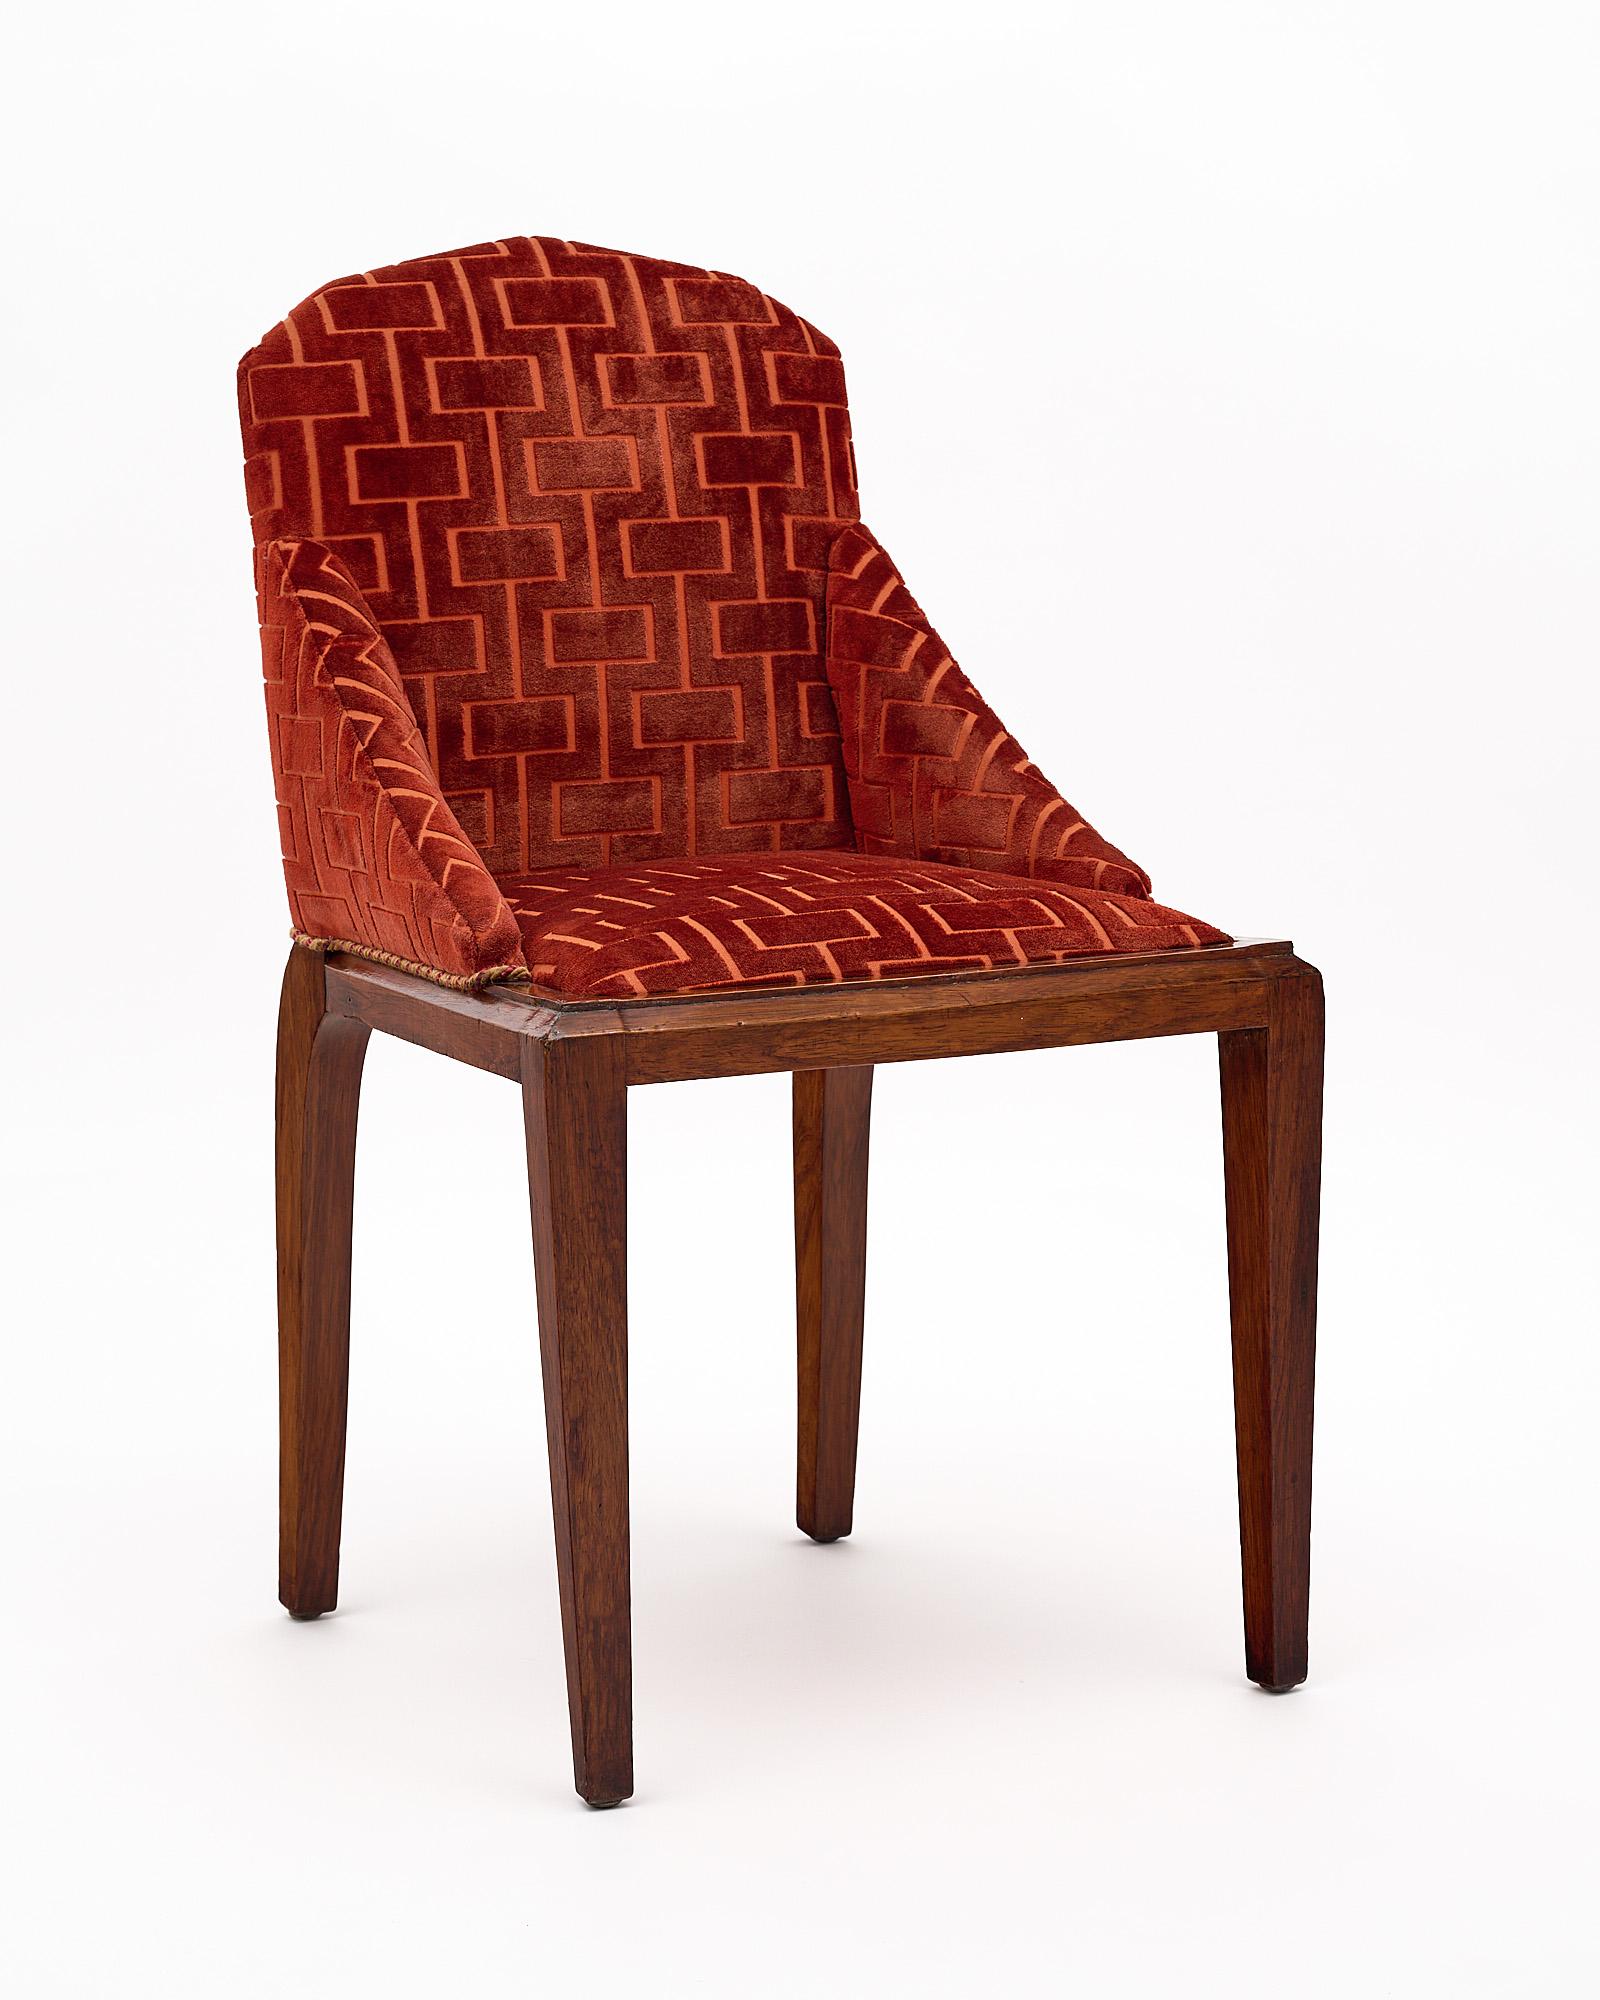 Chaise, française, de la période Art déco. Cette pièce est fabriquée en noyer avec un revêtement en velours estampé d'origine dans des tons chauds.